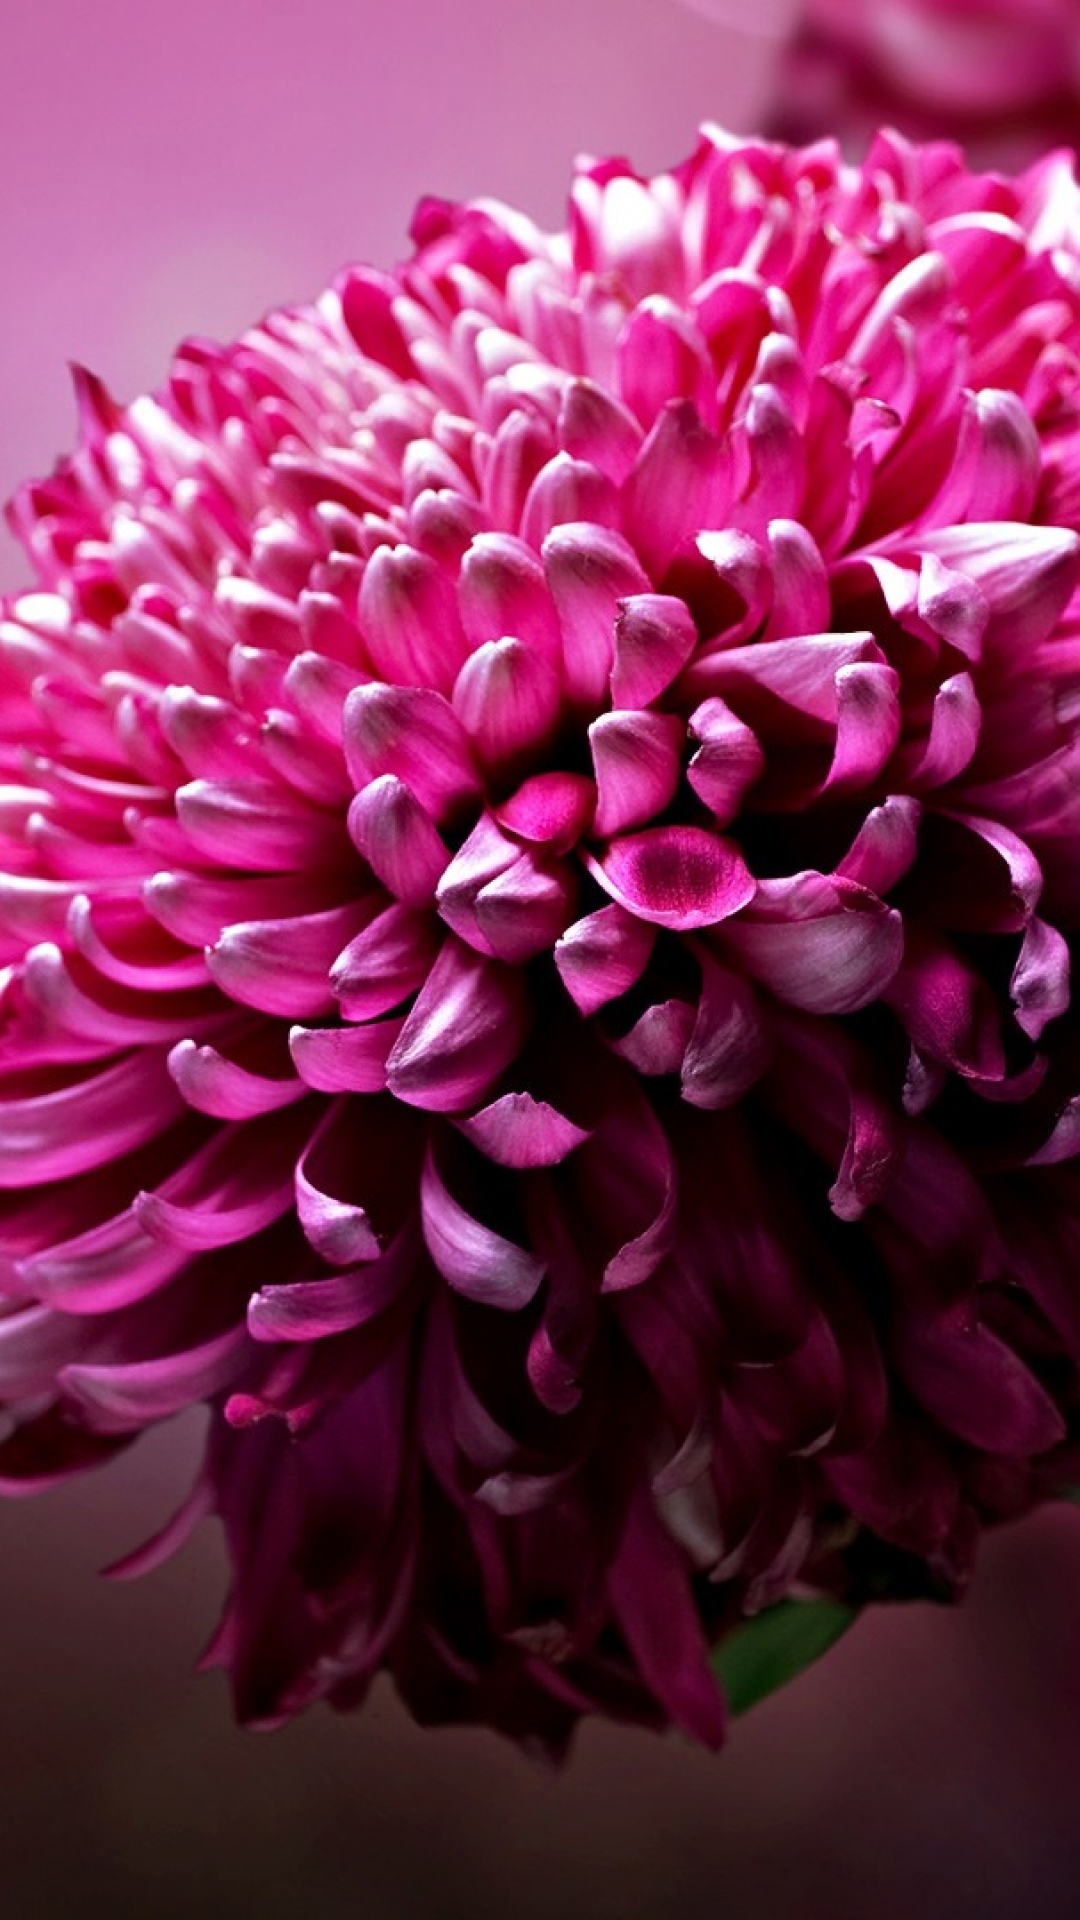 Hình nền Hoa Thược Dược Trên Nền đen Hình Nền Hoa 4k Hoa Thược Dược Mùa  Thu ảnh Chụp ảnh Hd Hoa Background Vector để tải xuống miễn phí  Pngtree